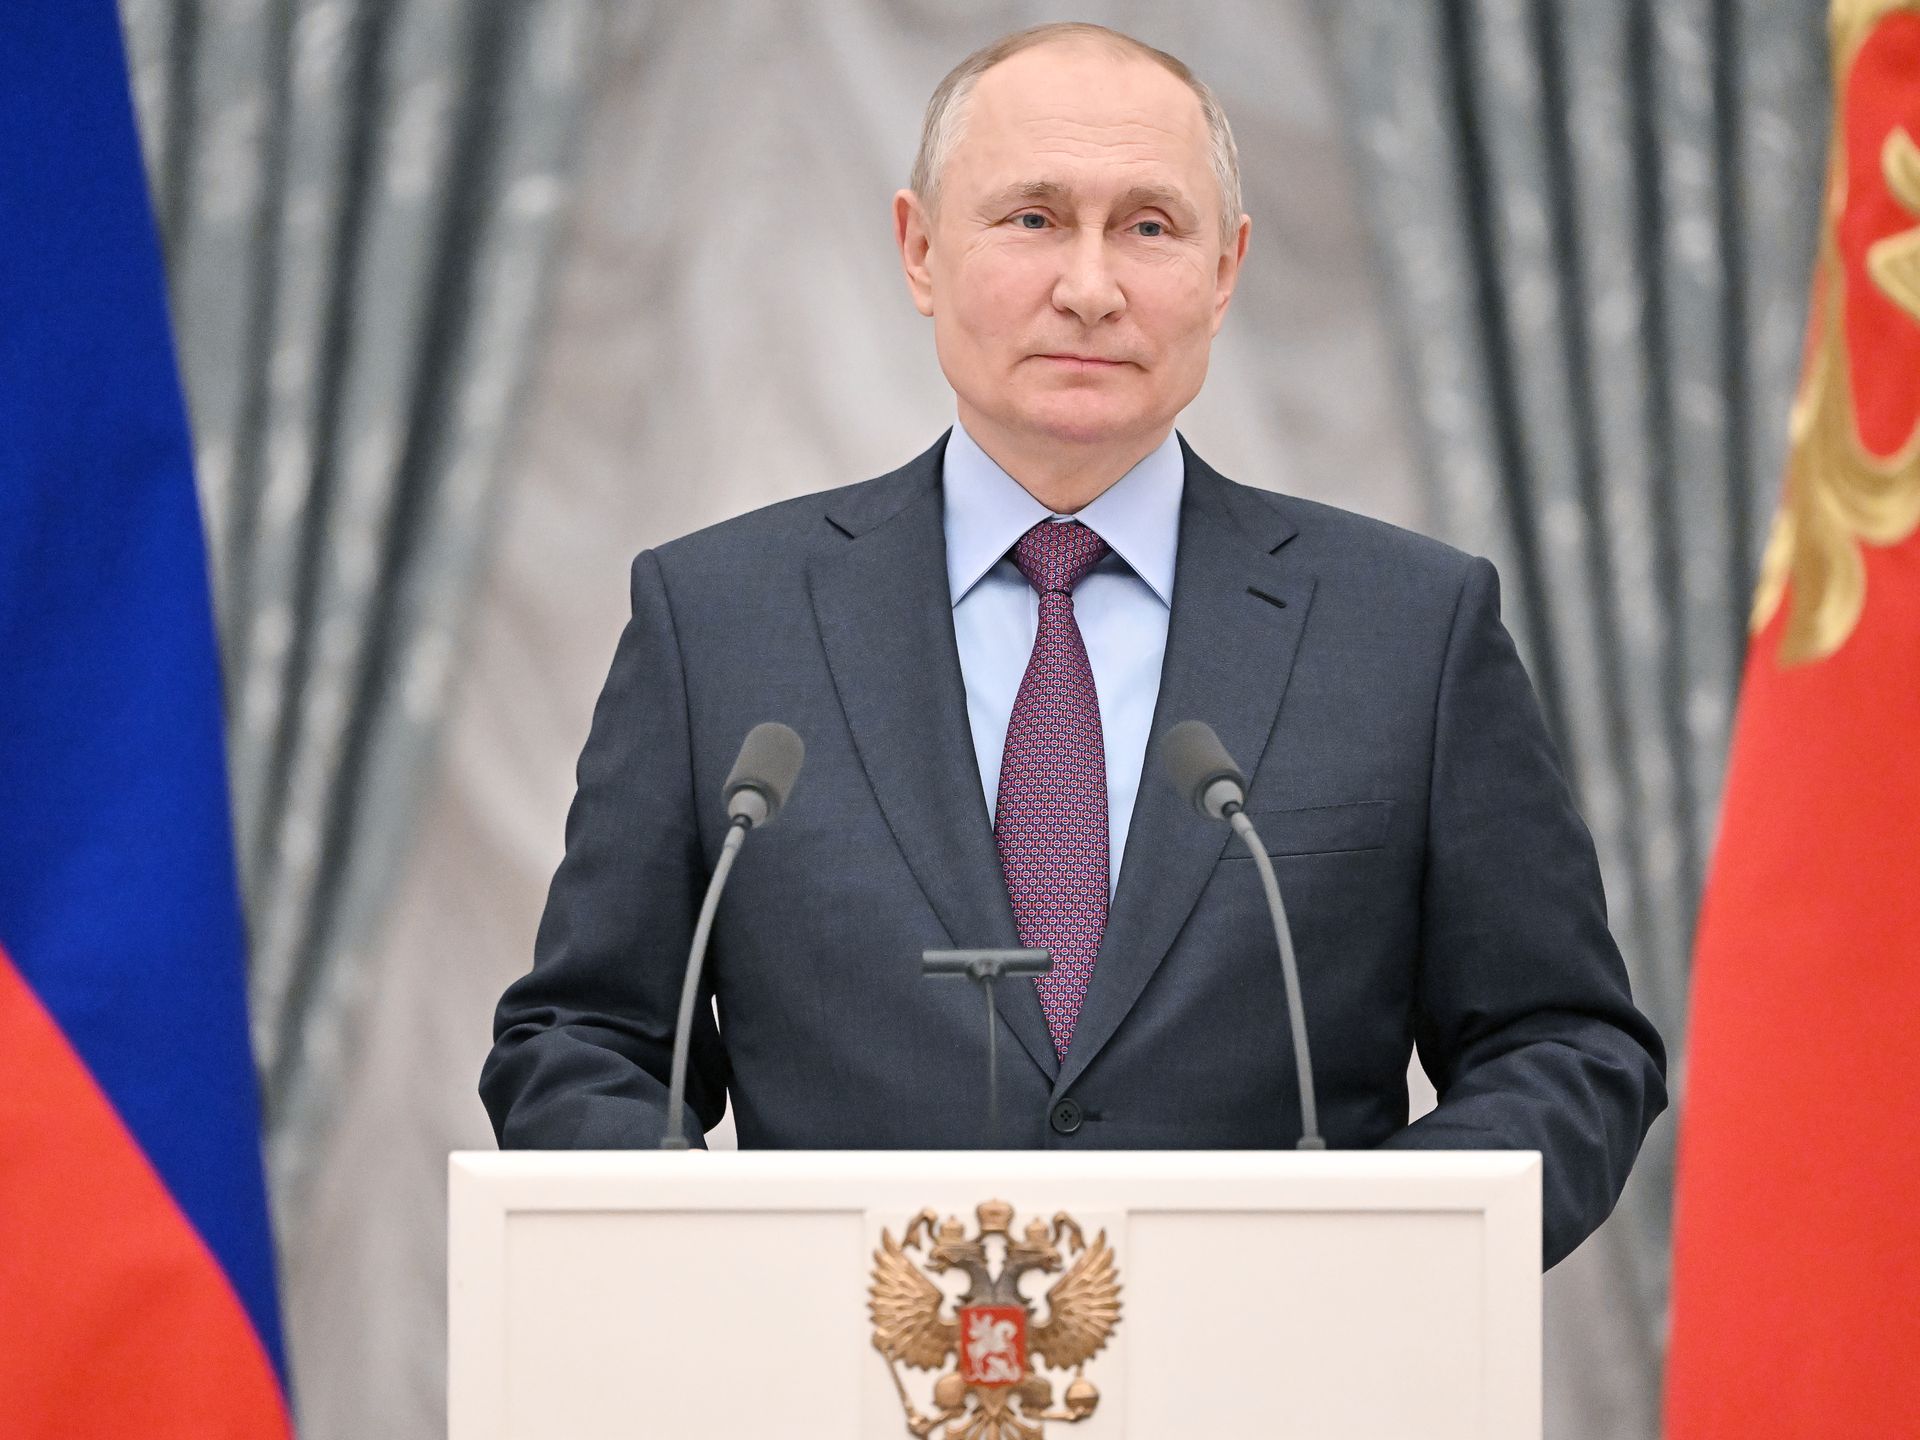 Putin declares war on ukraine